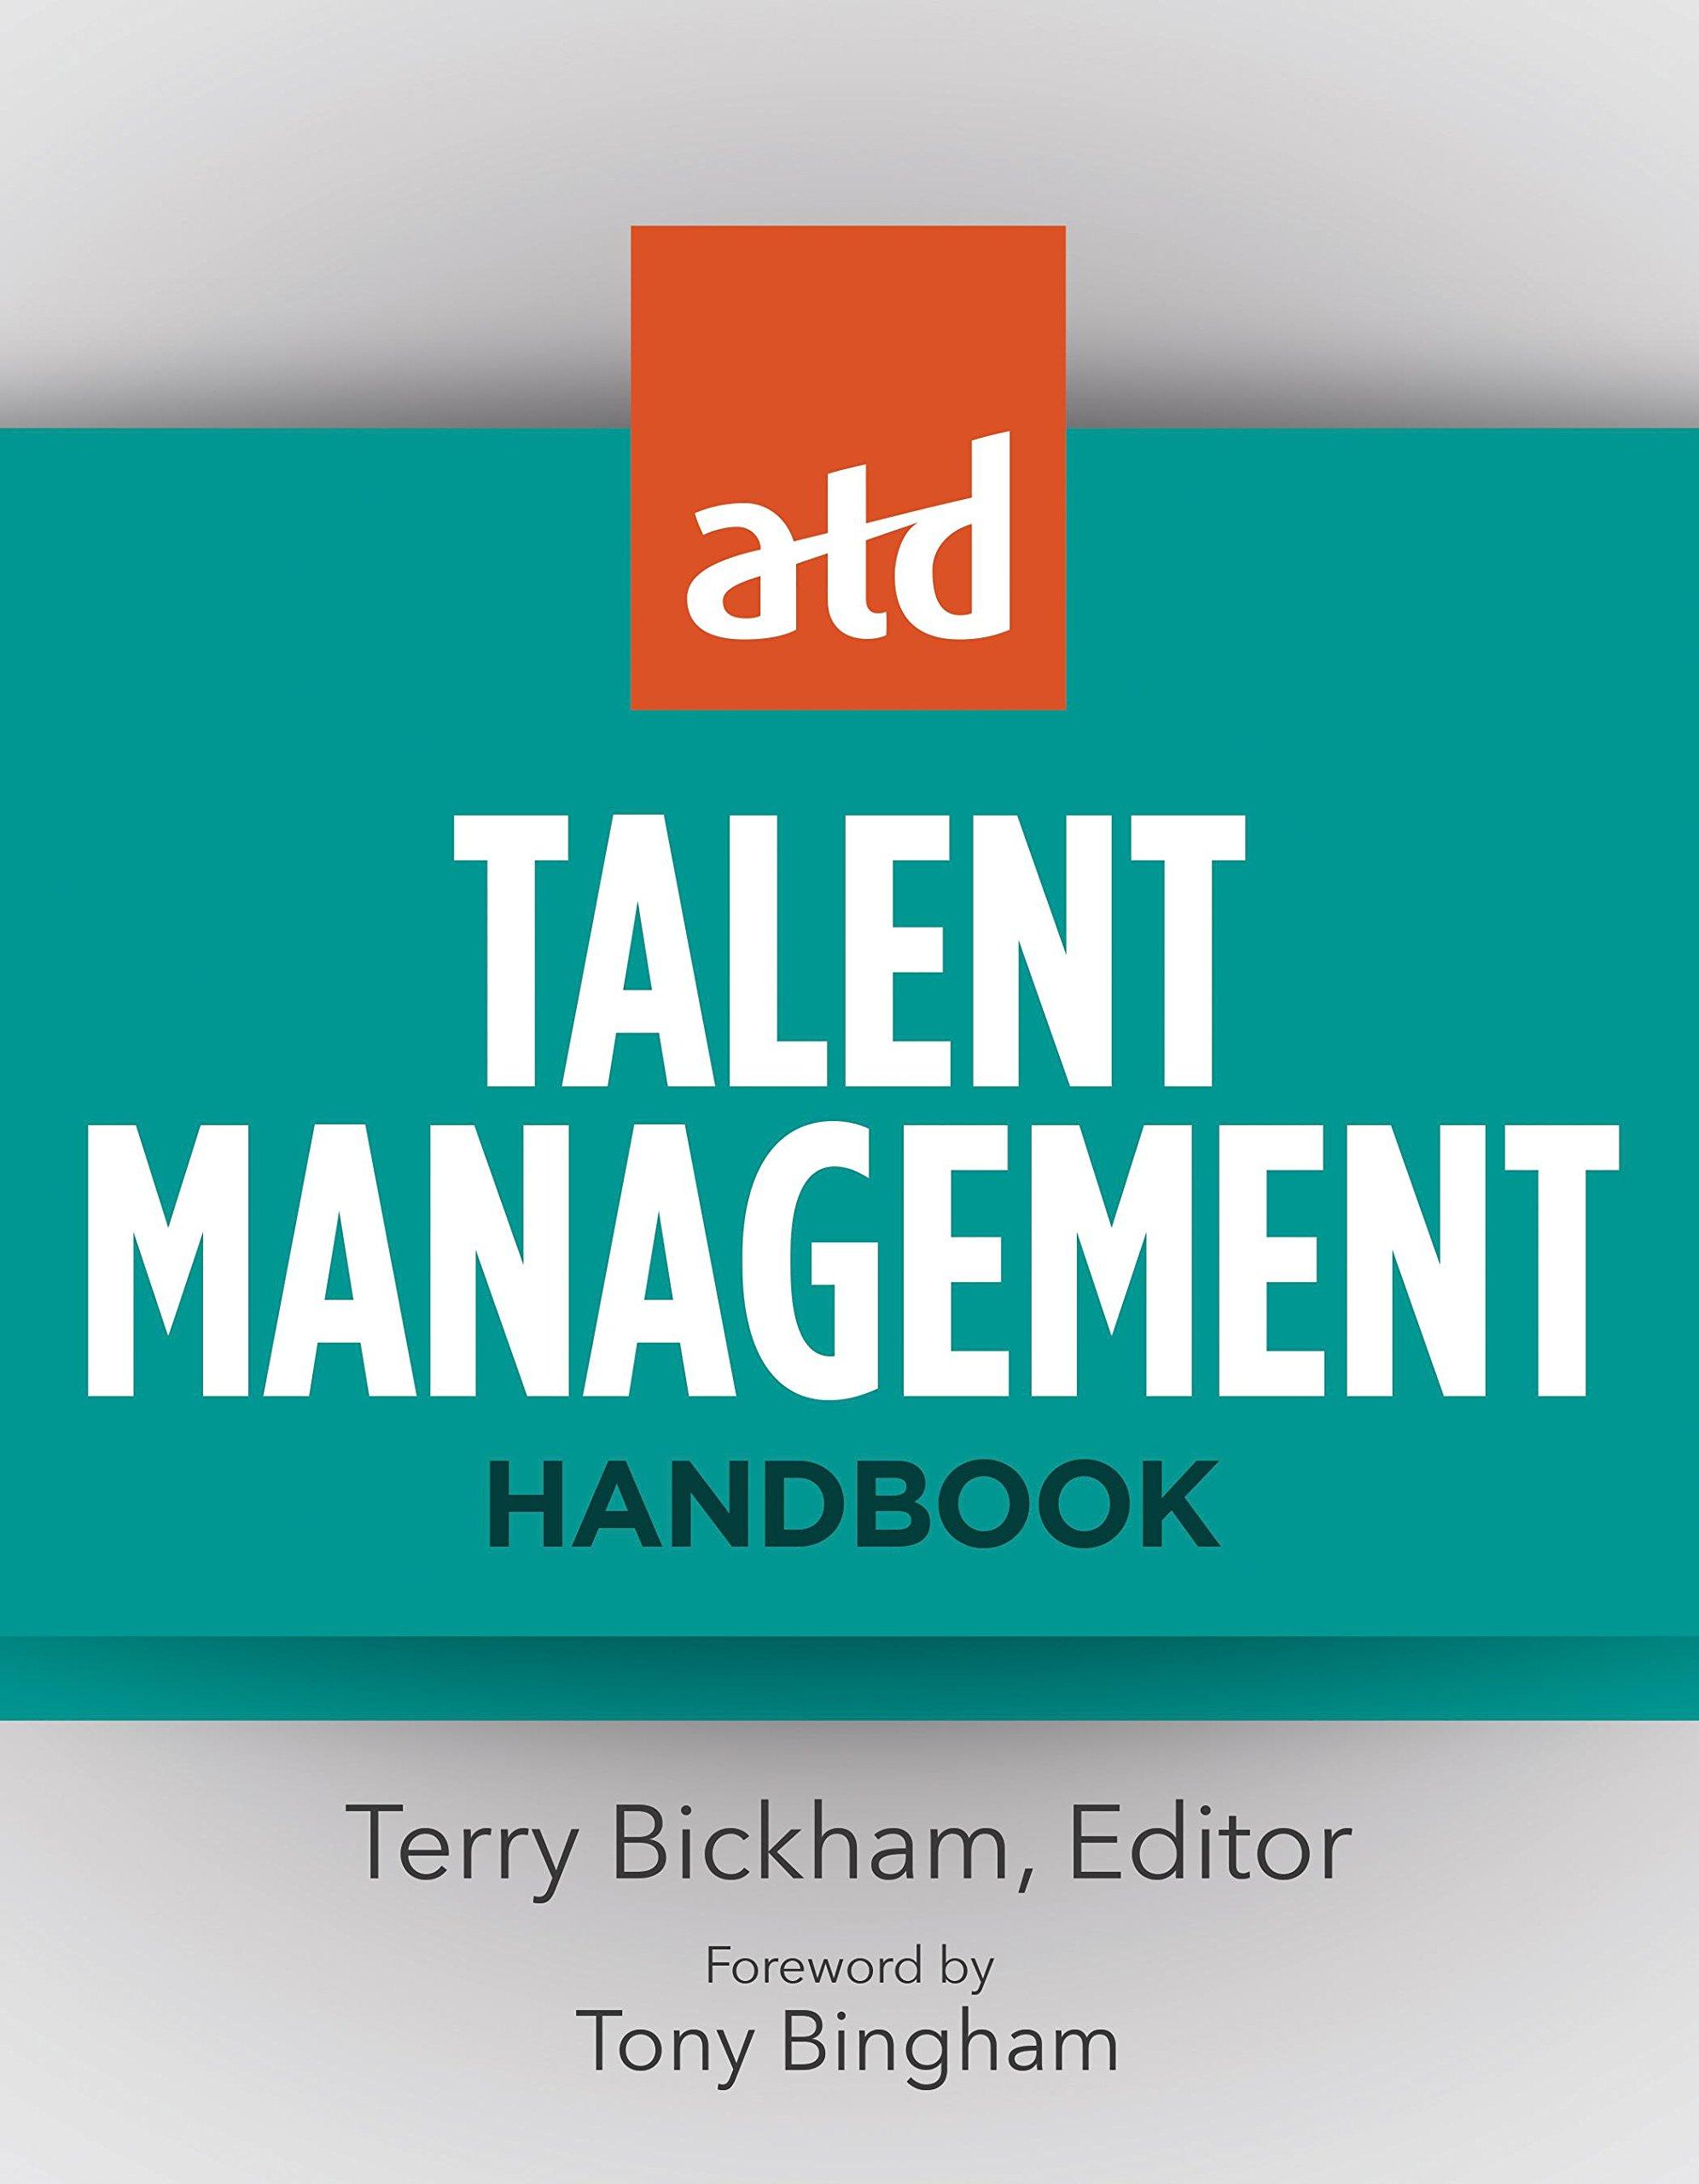 atd talent management handbook 1st edition terry bickham 1562869841, 978-1562869847